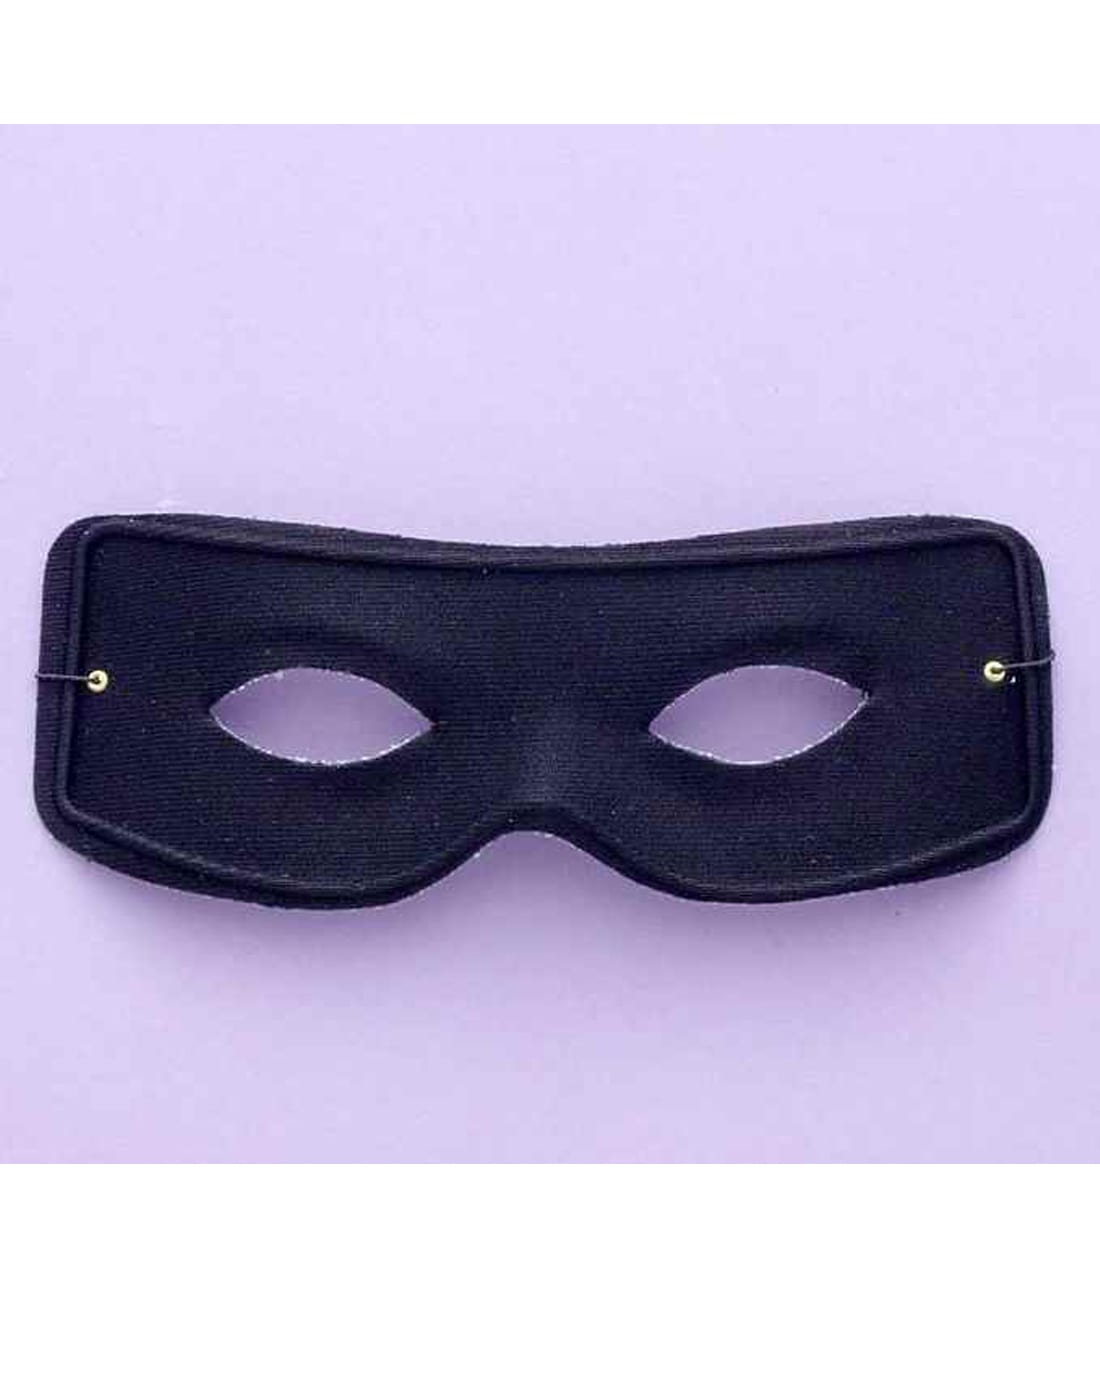 Masked Man Mask w/ Ties 12